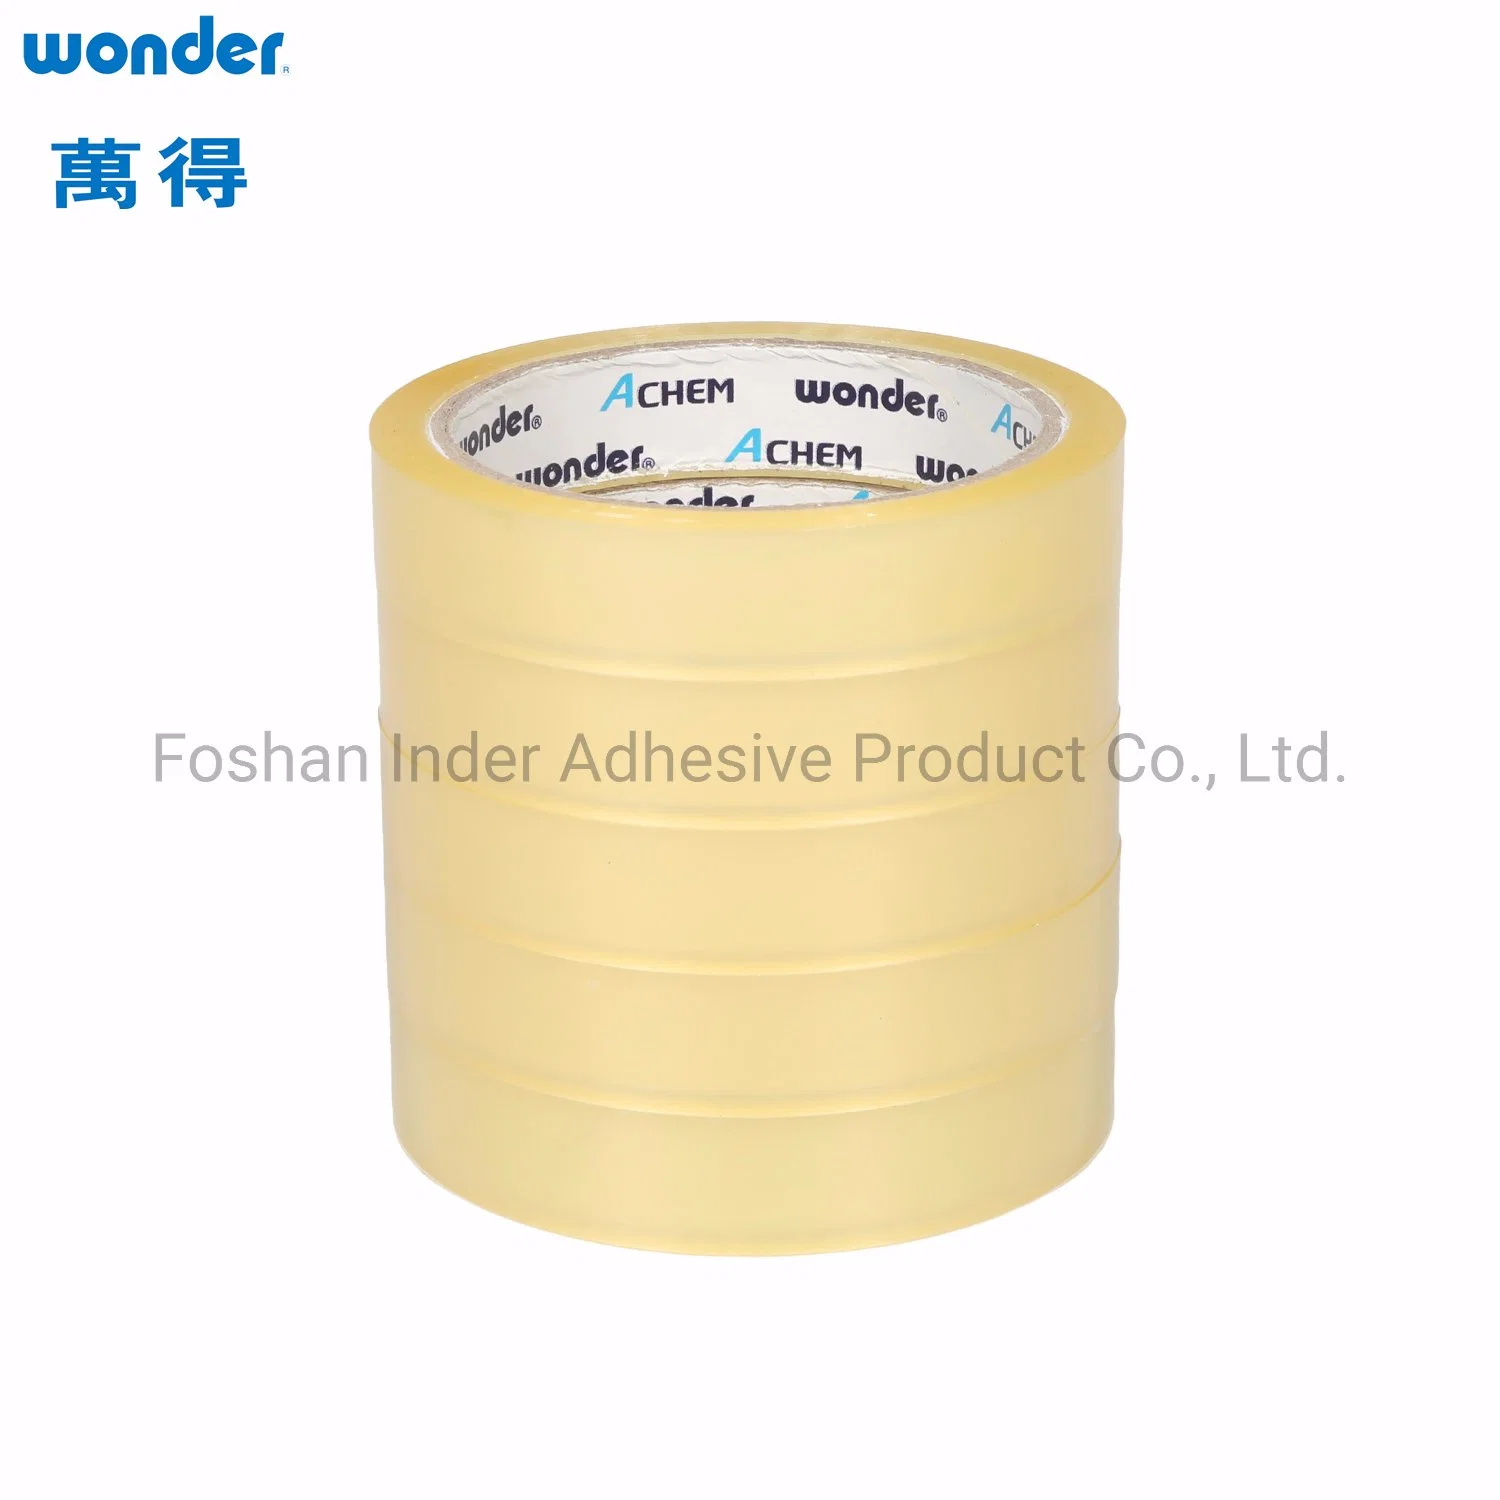 Hot Selling Wonder Brand OPP Packing Tape Dispenser / Tape Cutter